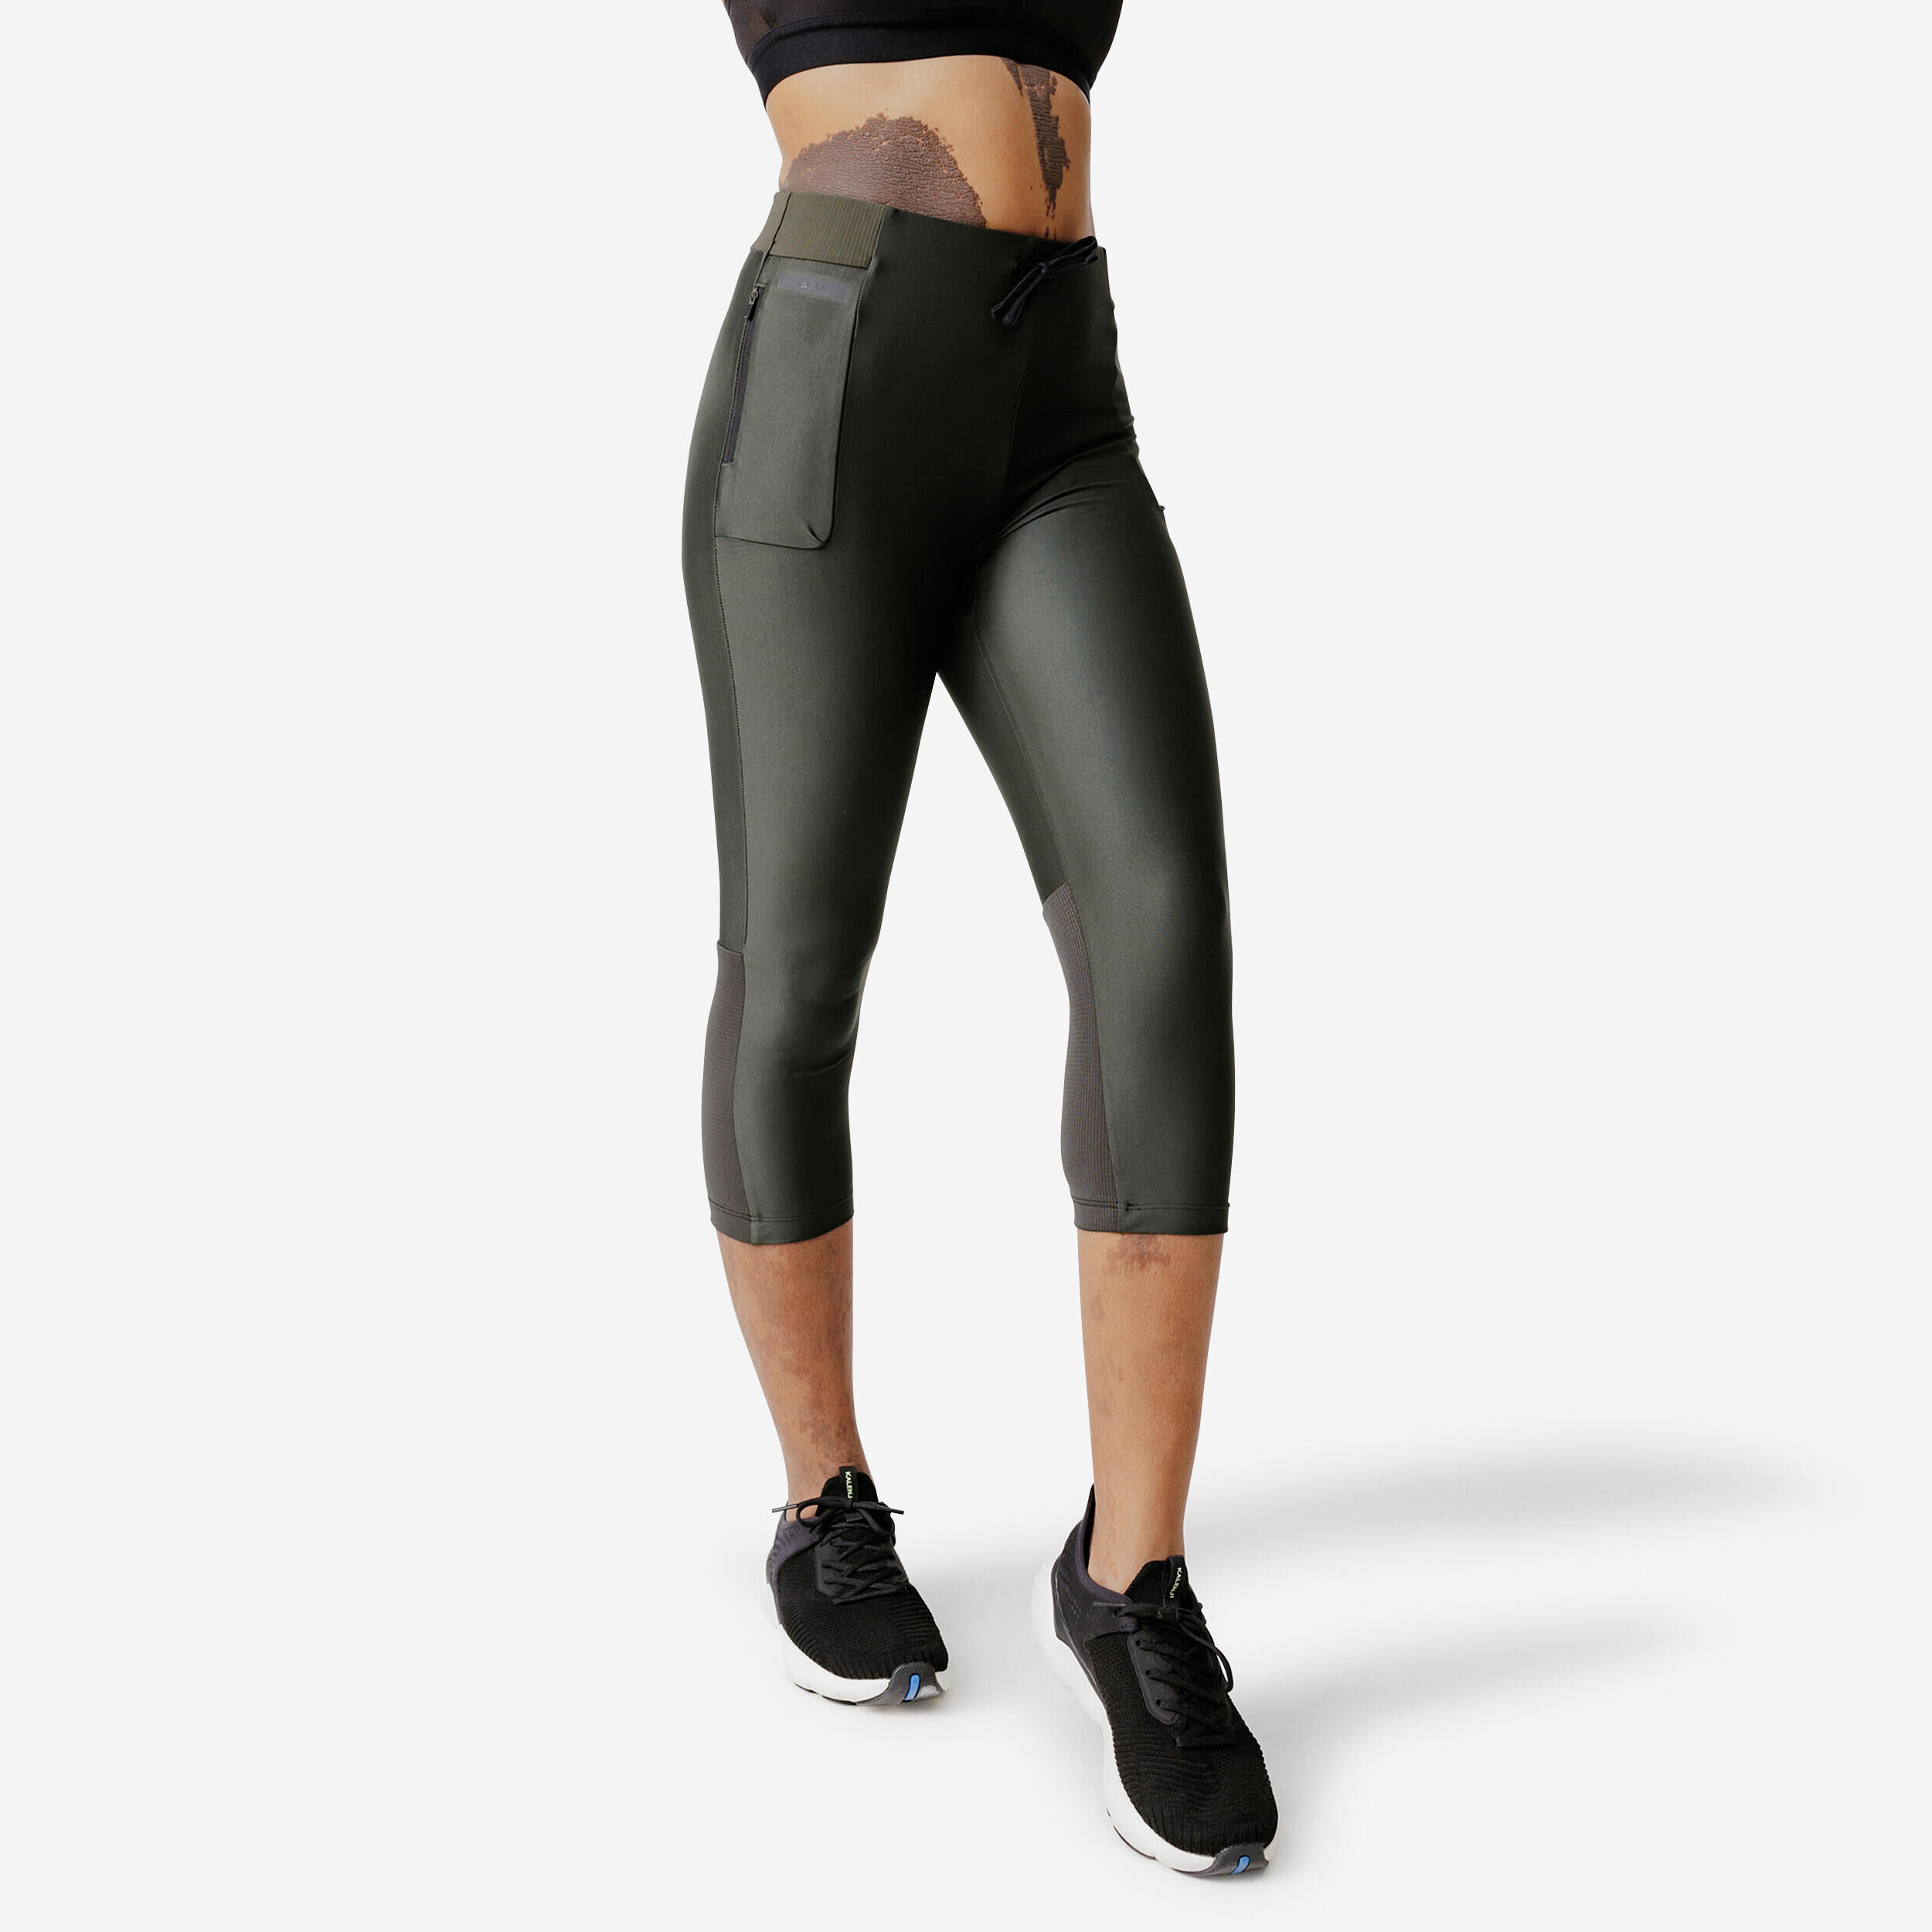 Buy Sugar Pocket Sports Pants Workout Leggings Women's Running